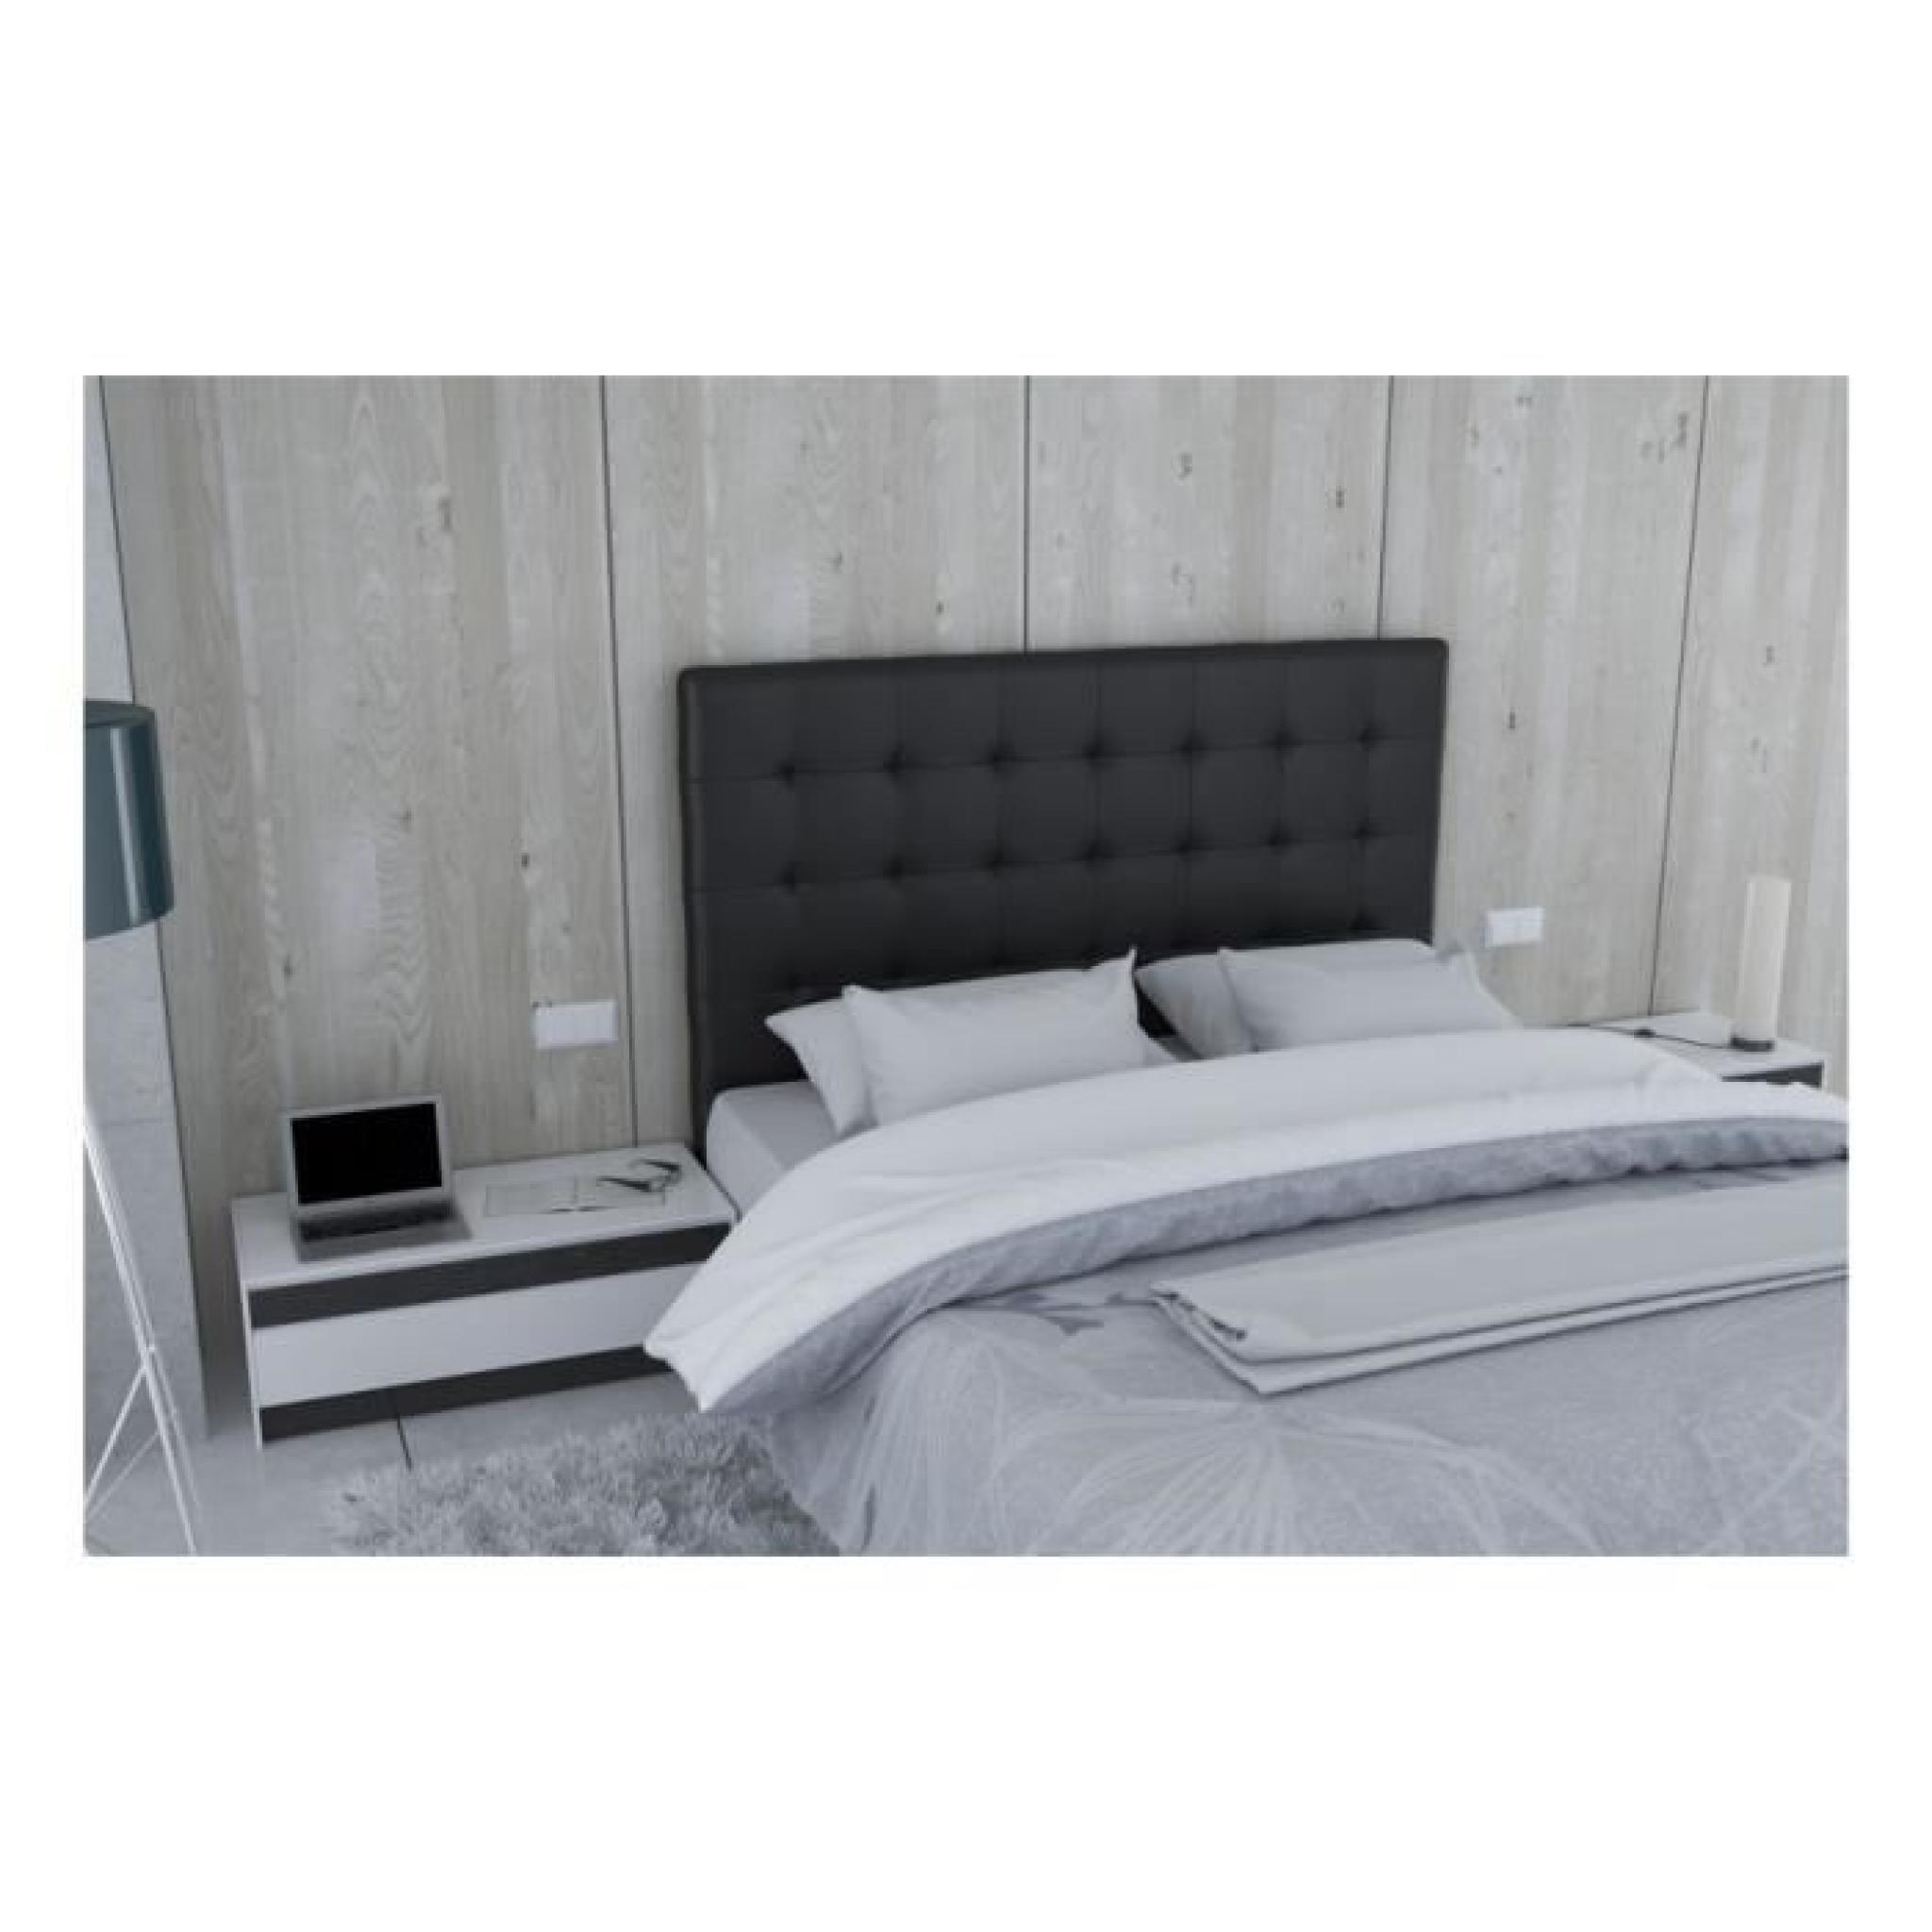 Tête de lit en PU noir - Naples Taille - 180 cm pas cher